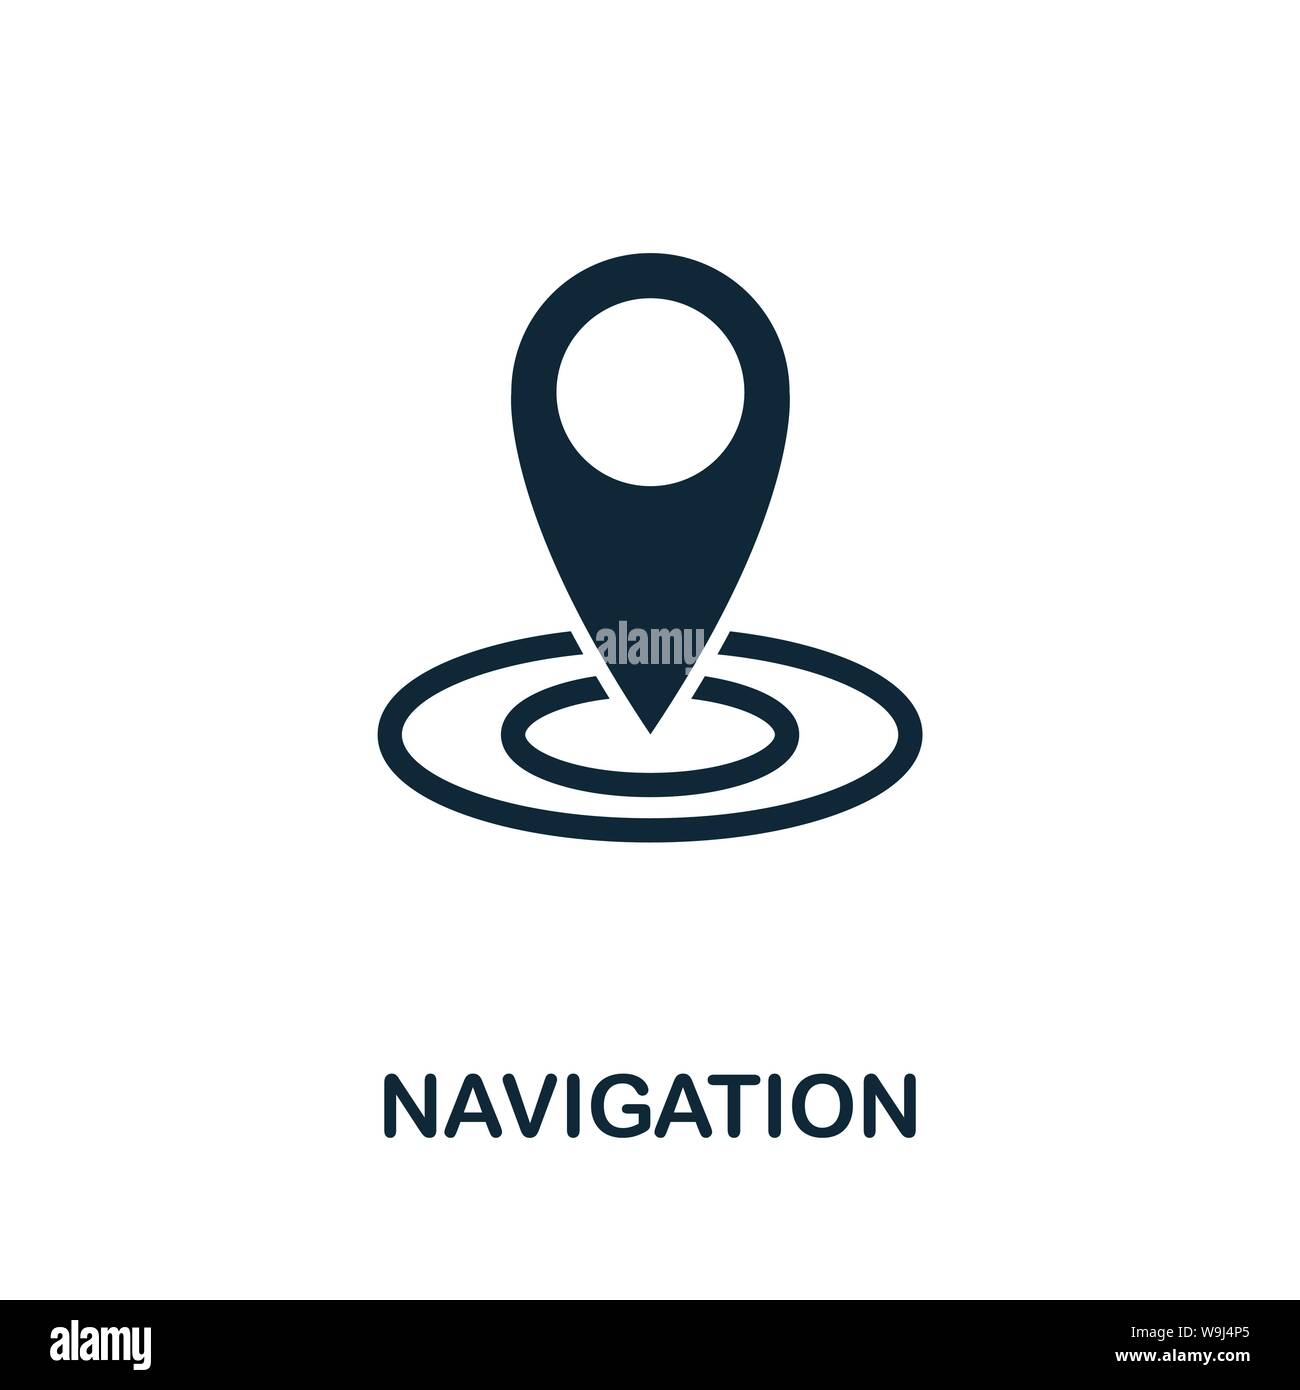 Navigation vektor Symbol. Kreative Zeichen von Seo und Entwicklung icons Collection. Gefüllte flache Navigation Symbol für Computer und mobile Stock Vektor